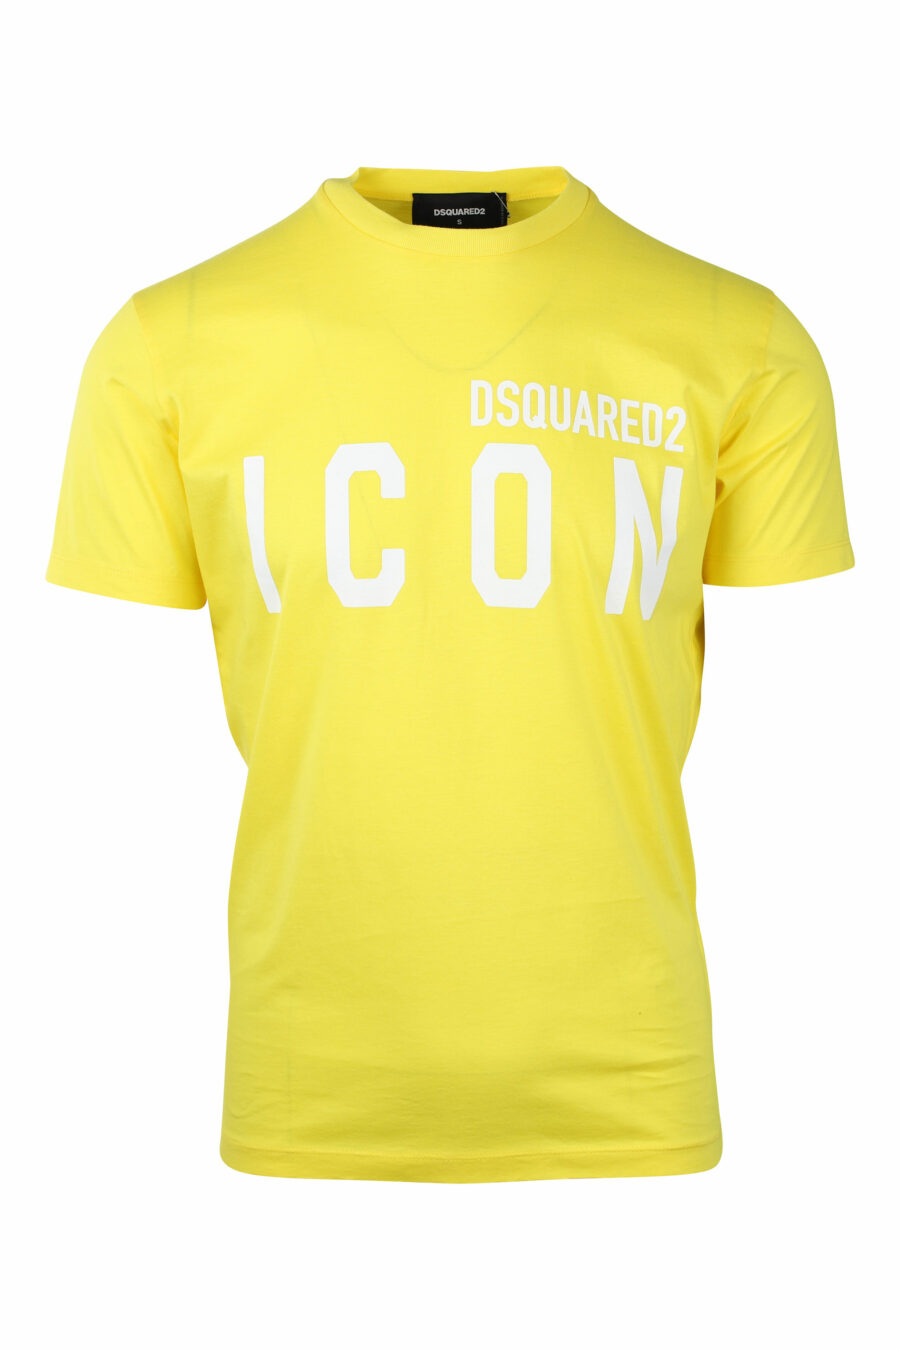 T-shirt jaune avec double logo "icon" blanc - IMG 1404